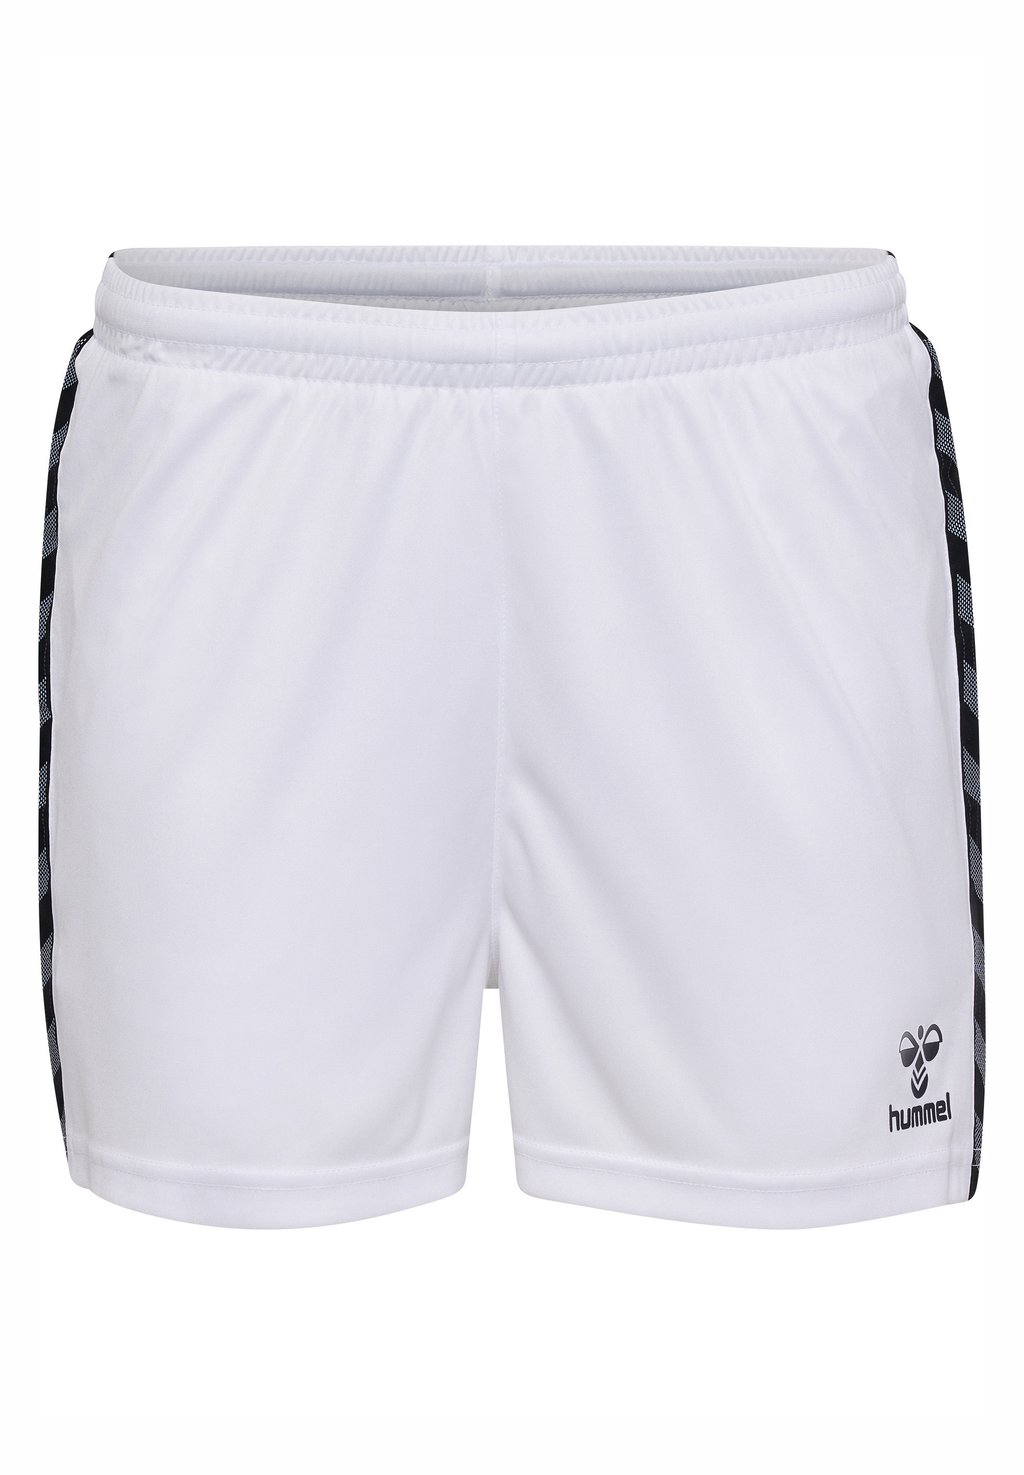 Спортивные шорты AUTHENTIC Hummel, цвет white спортивные брюки authentic hummel цвет black white